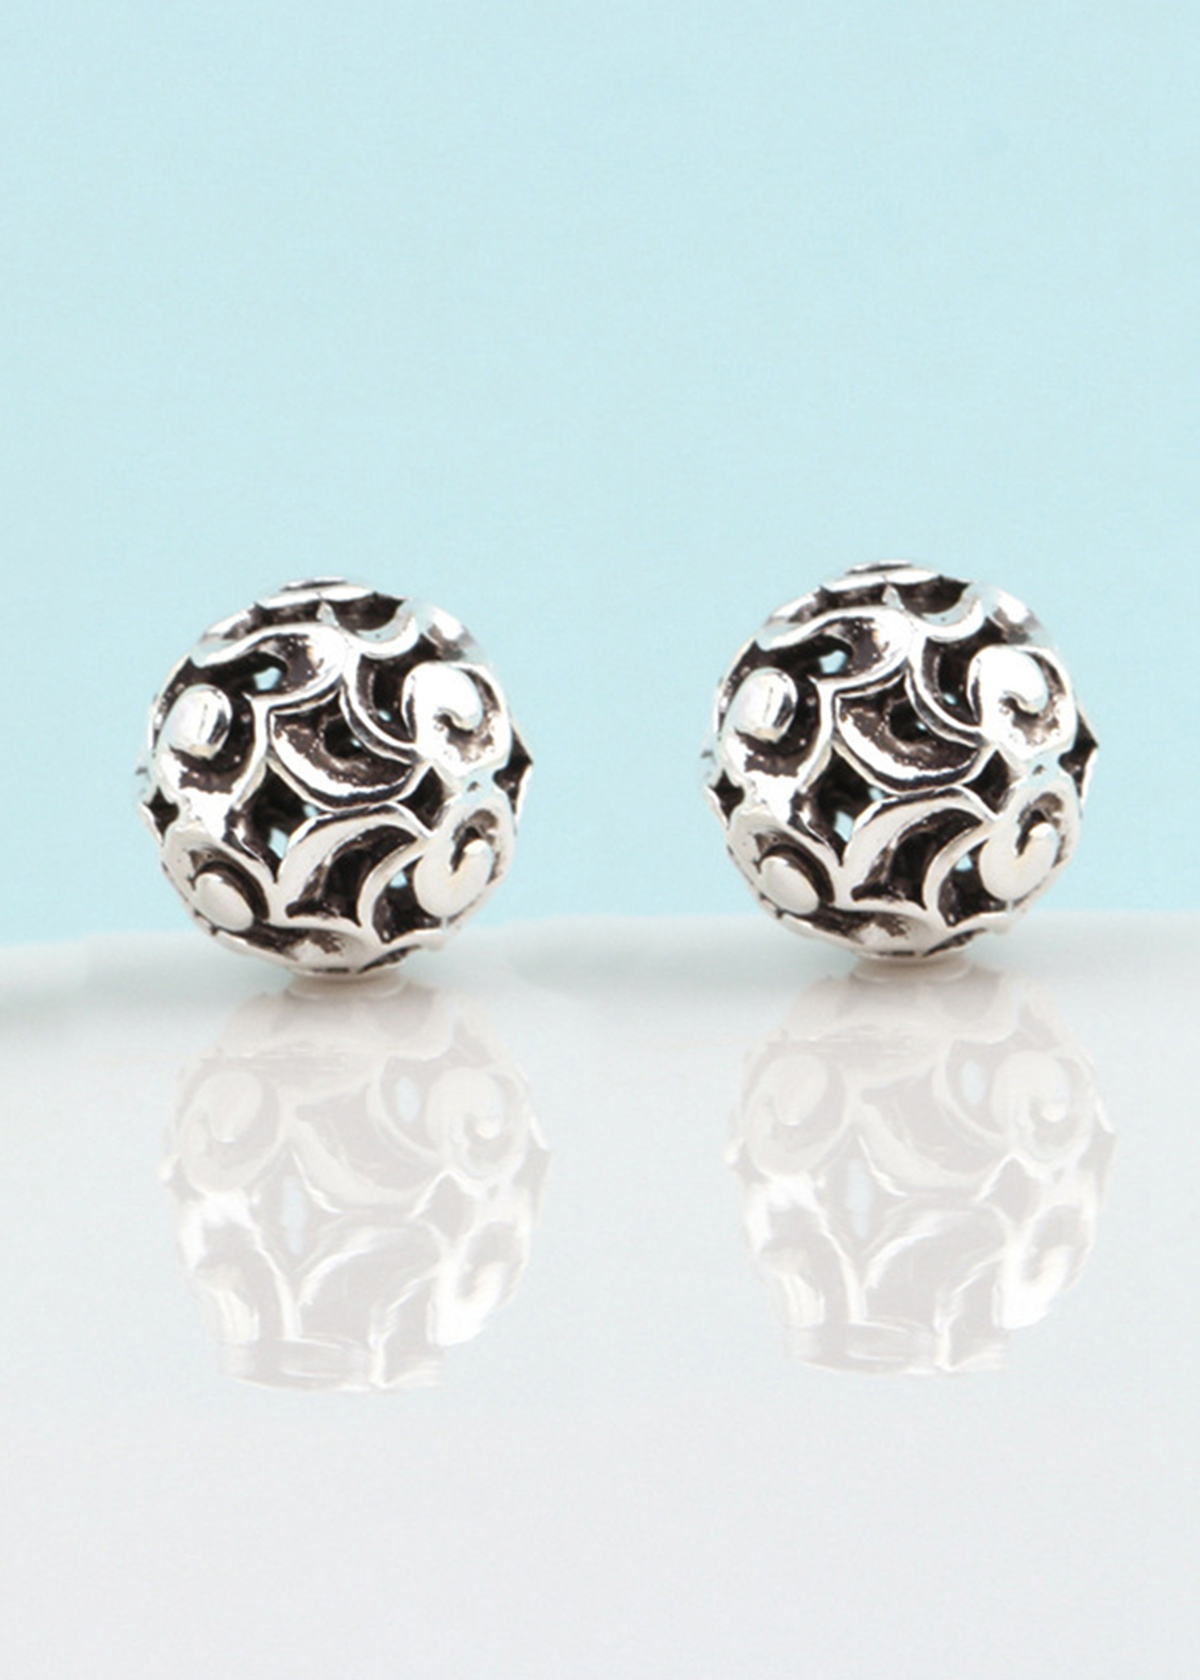 Combo 3 cái charm bạc hình cầu họa tiết hoa văn xỏ ngang - Ngọc Quý Gemstones